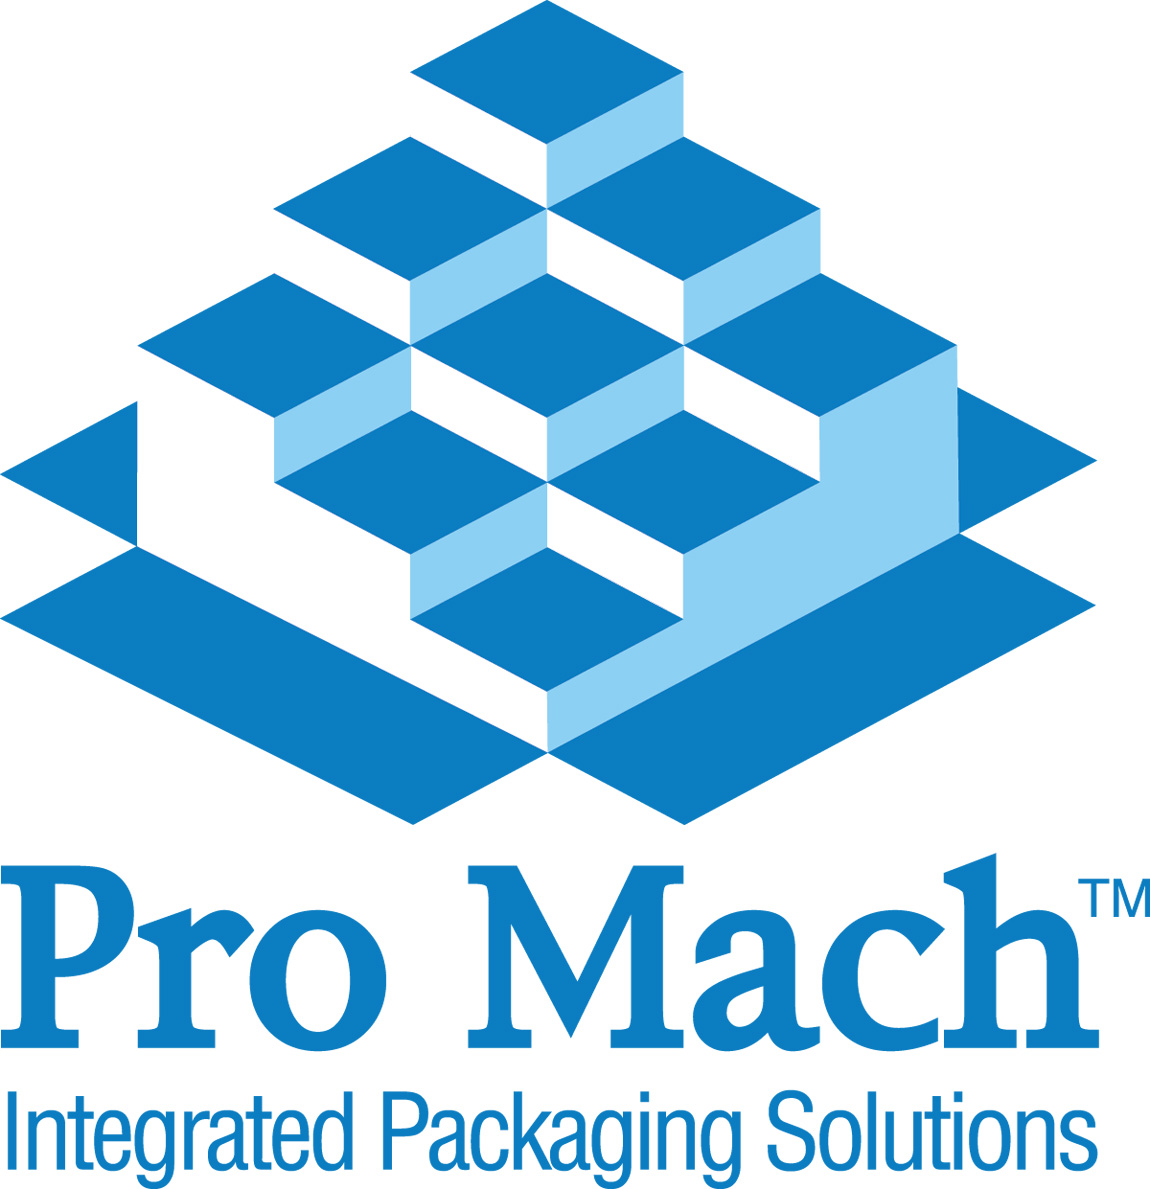 Pro Mach, Inc.